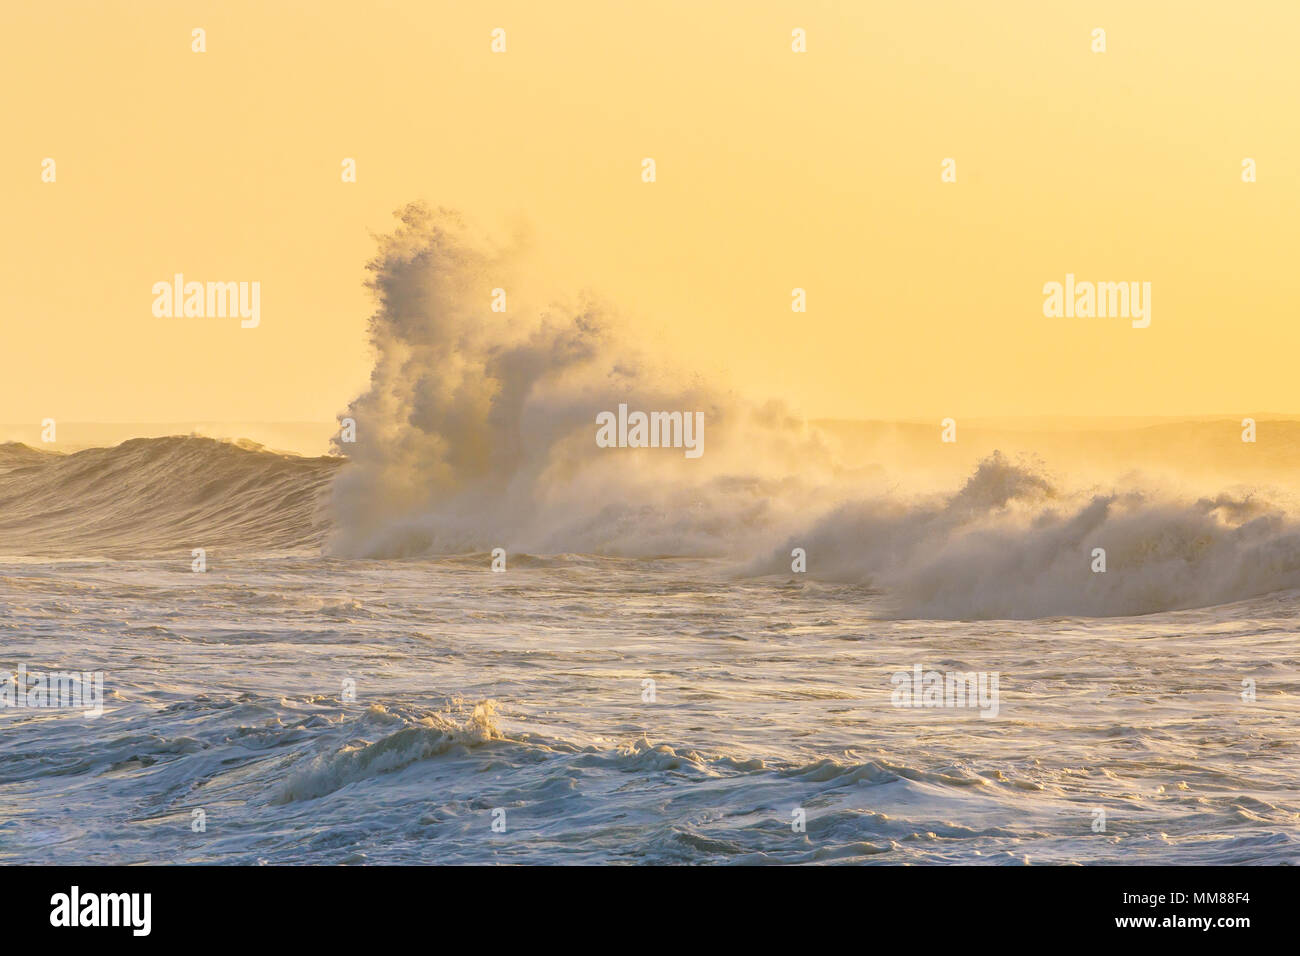 Big stormy waves crashing over Portuguese coast during sunset Stock Photo